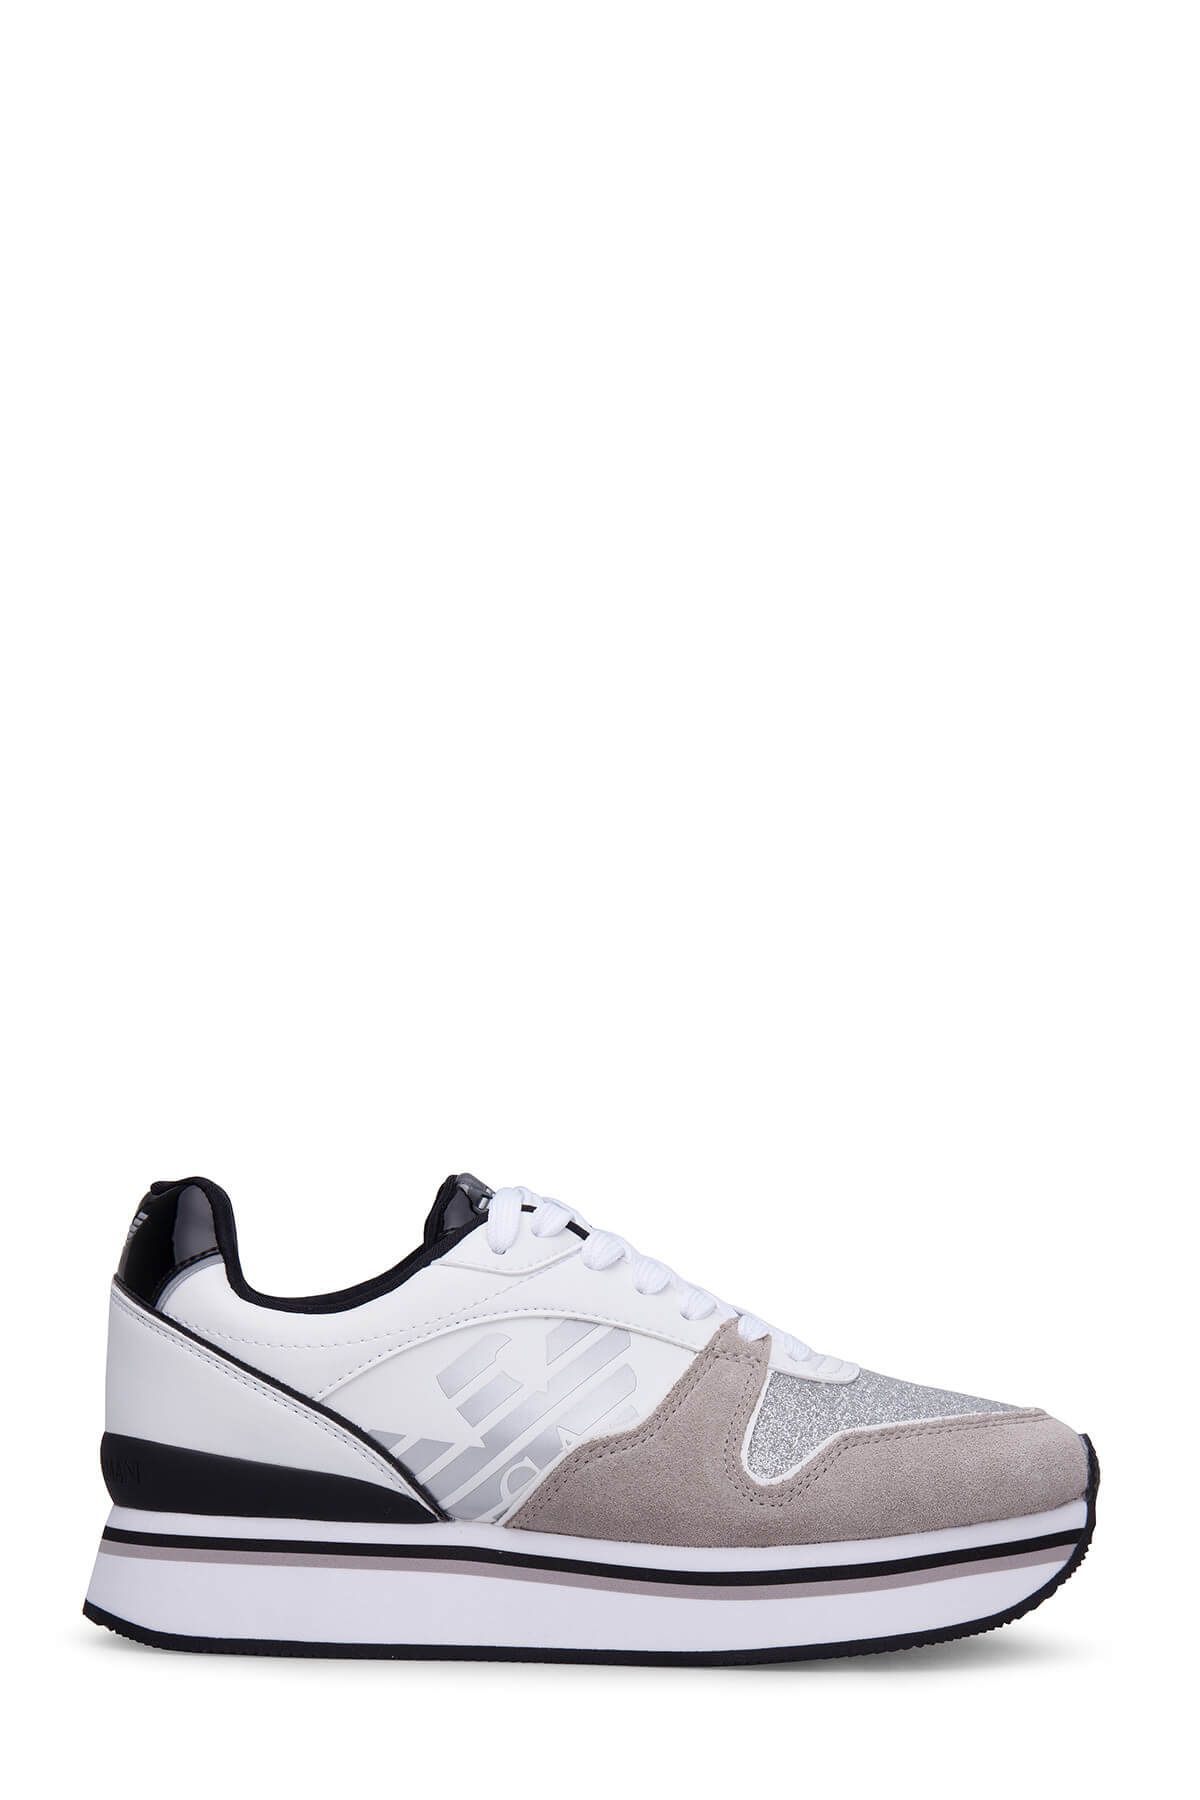 Emporio Armani Kadın Gümüş Sneaker X3X046 Xl214 A022